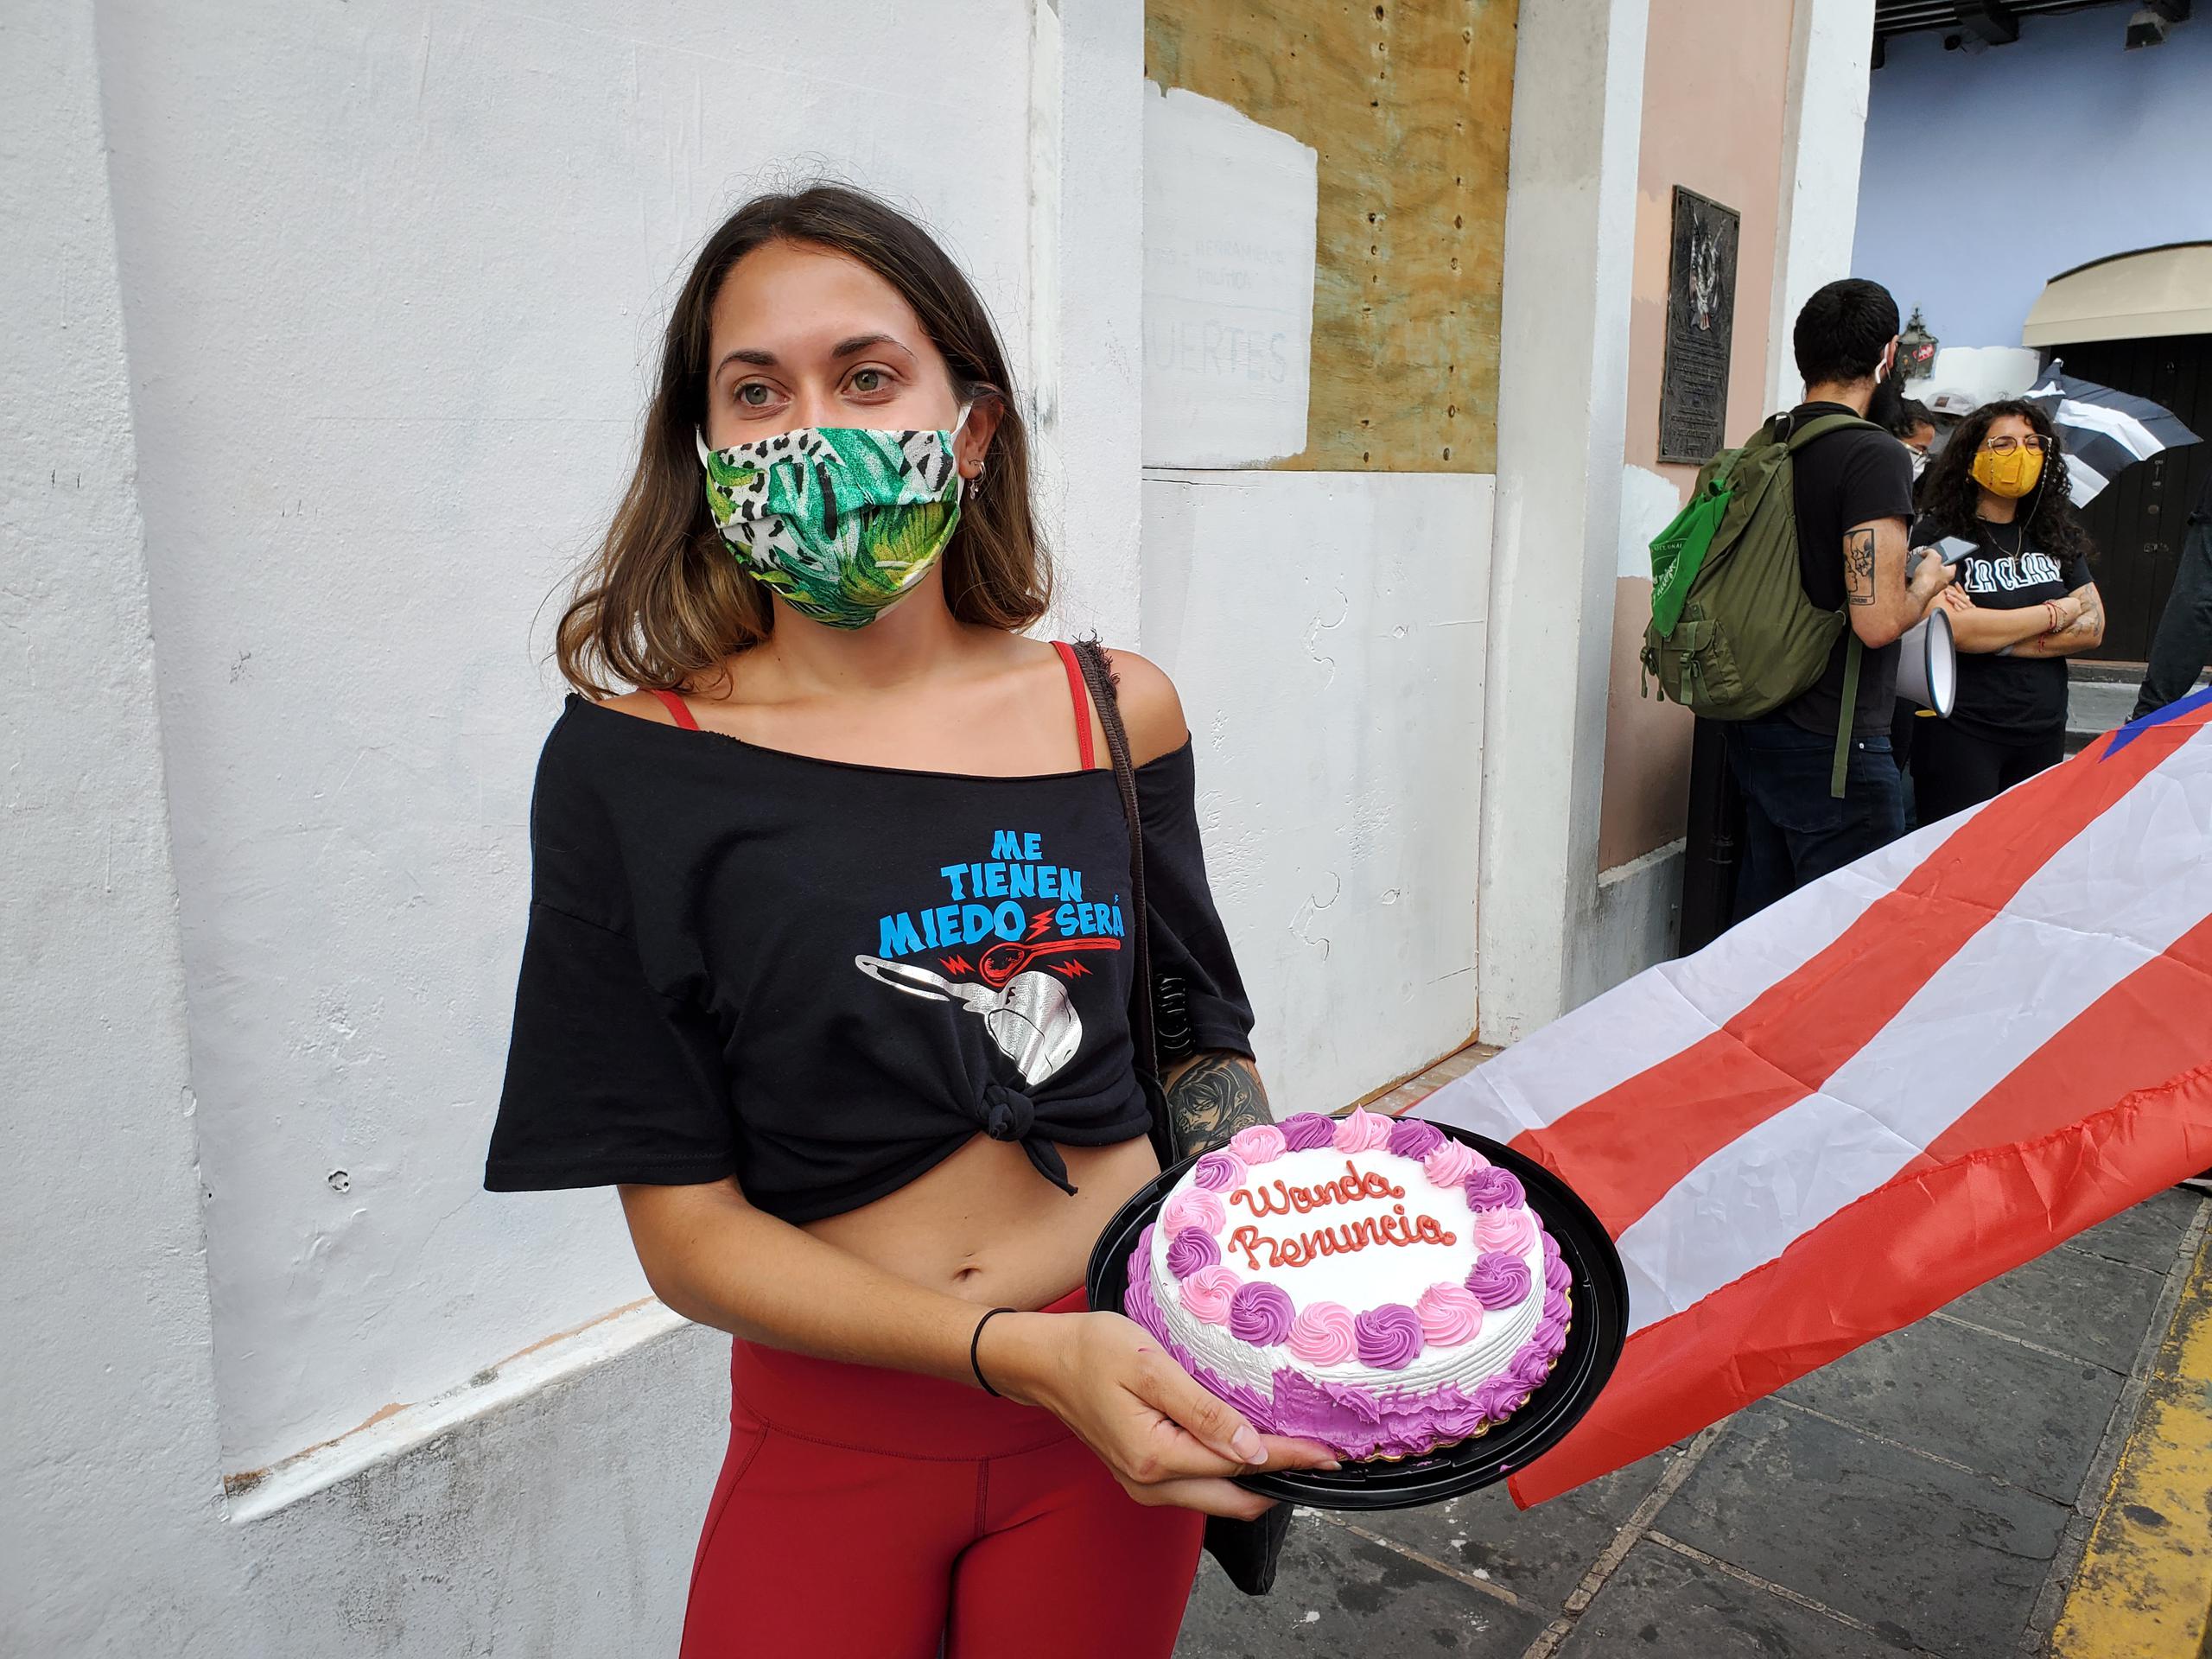 Un año después de haber participado en las protestas que forzaron la renuncia de Ricardo Rosselló, Gianna Del Mastro, como muchos otros jóvenes, volvió a las calles a protestar contra el gobierno de Wanda Vázquez.